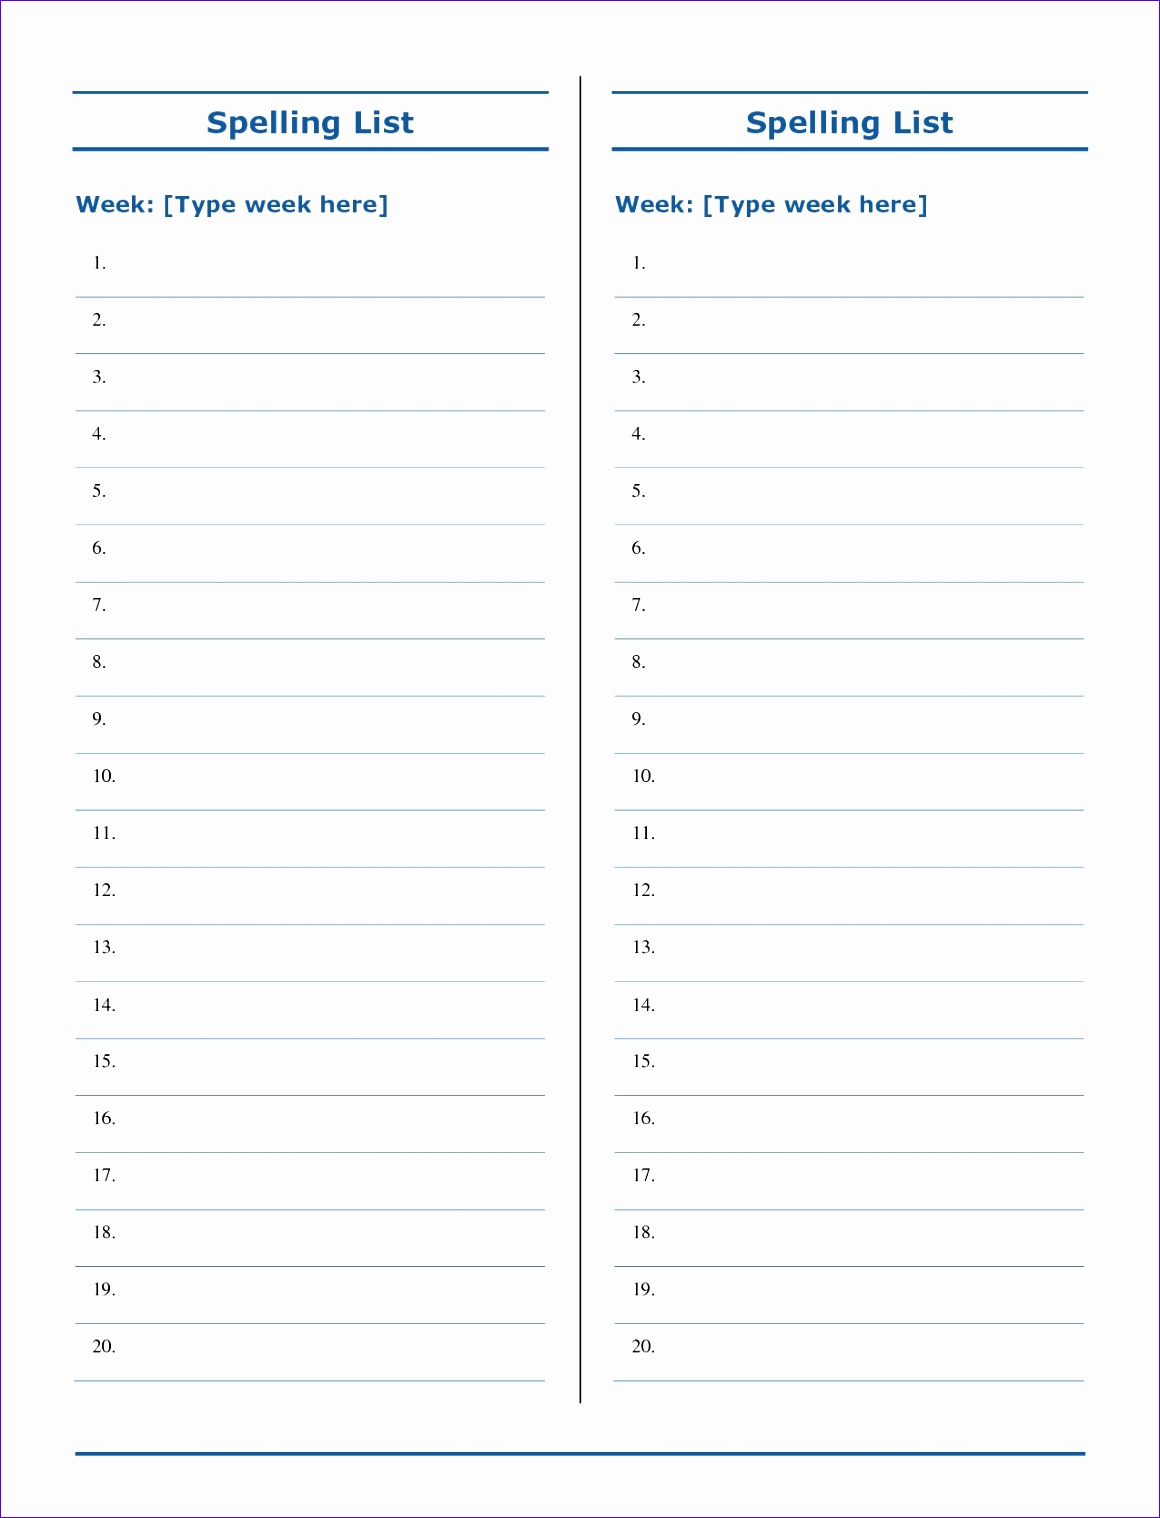 spelling test form printable online calendar sample